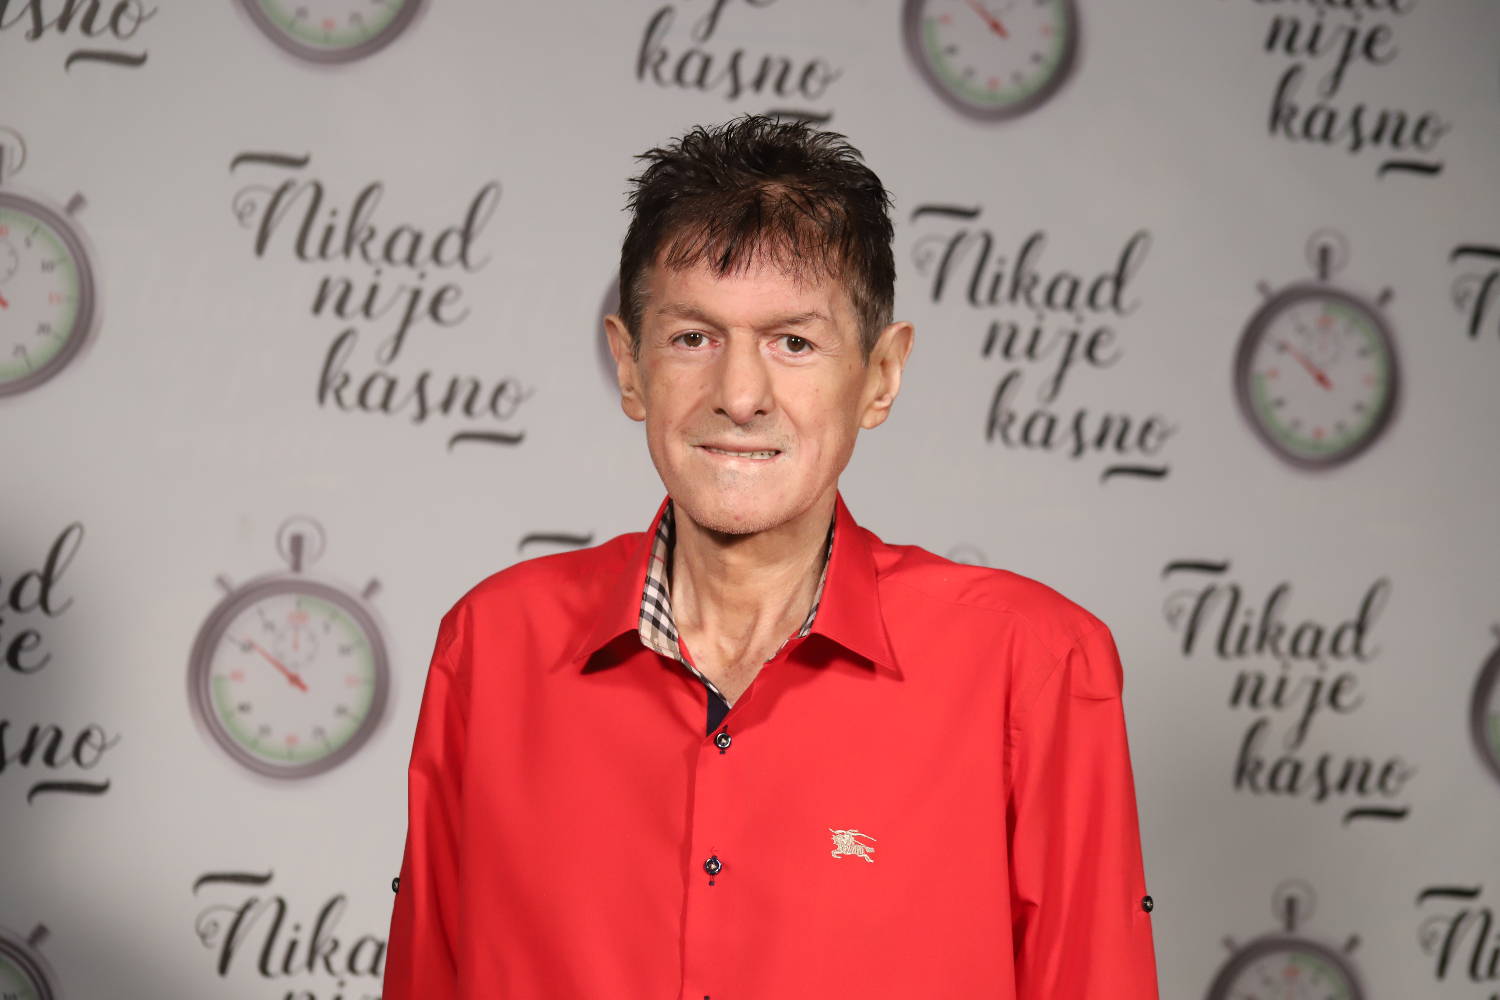 Preminuo Ibrahim Hajradinović Ibro, takmičar šou programa 